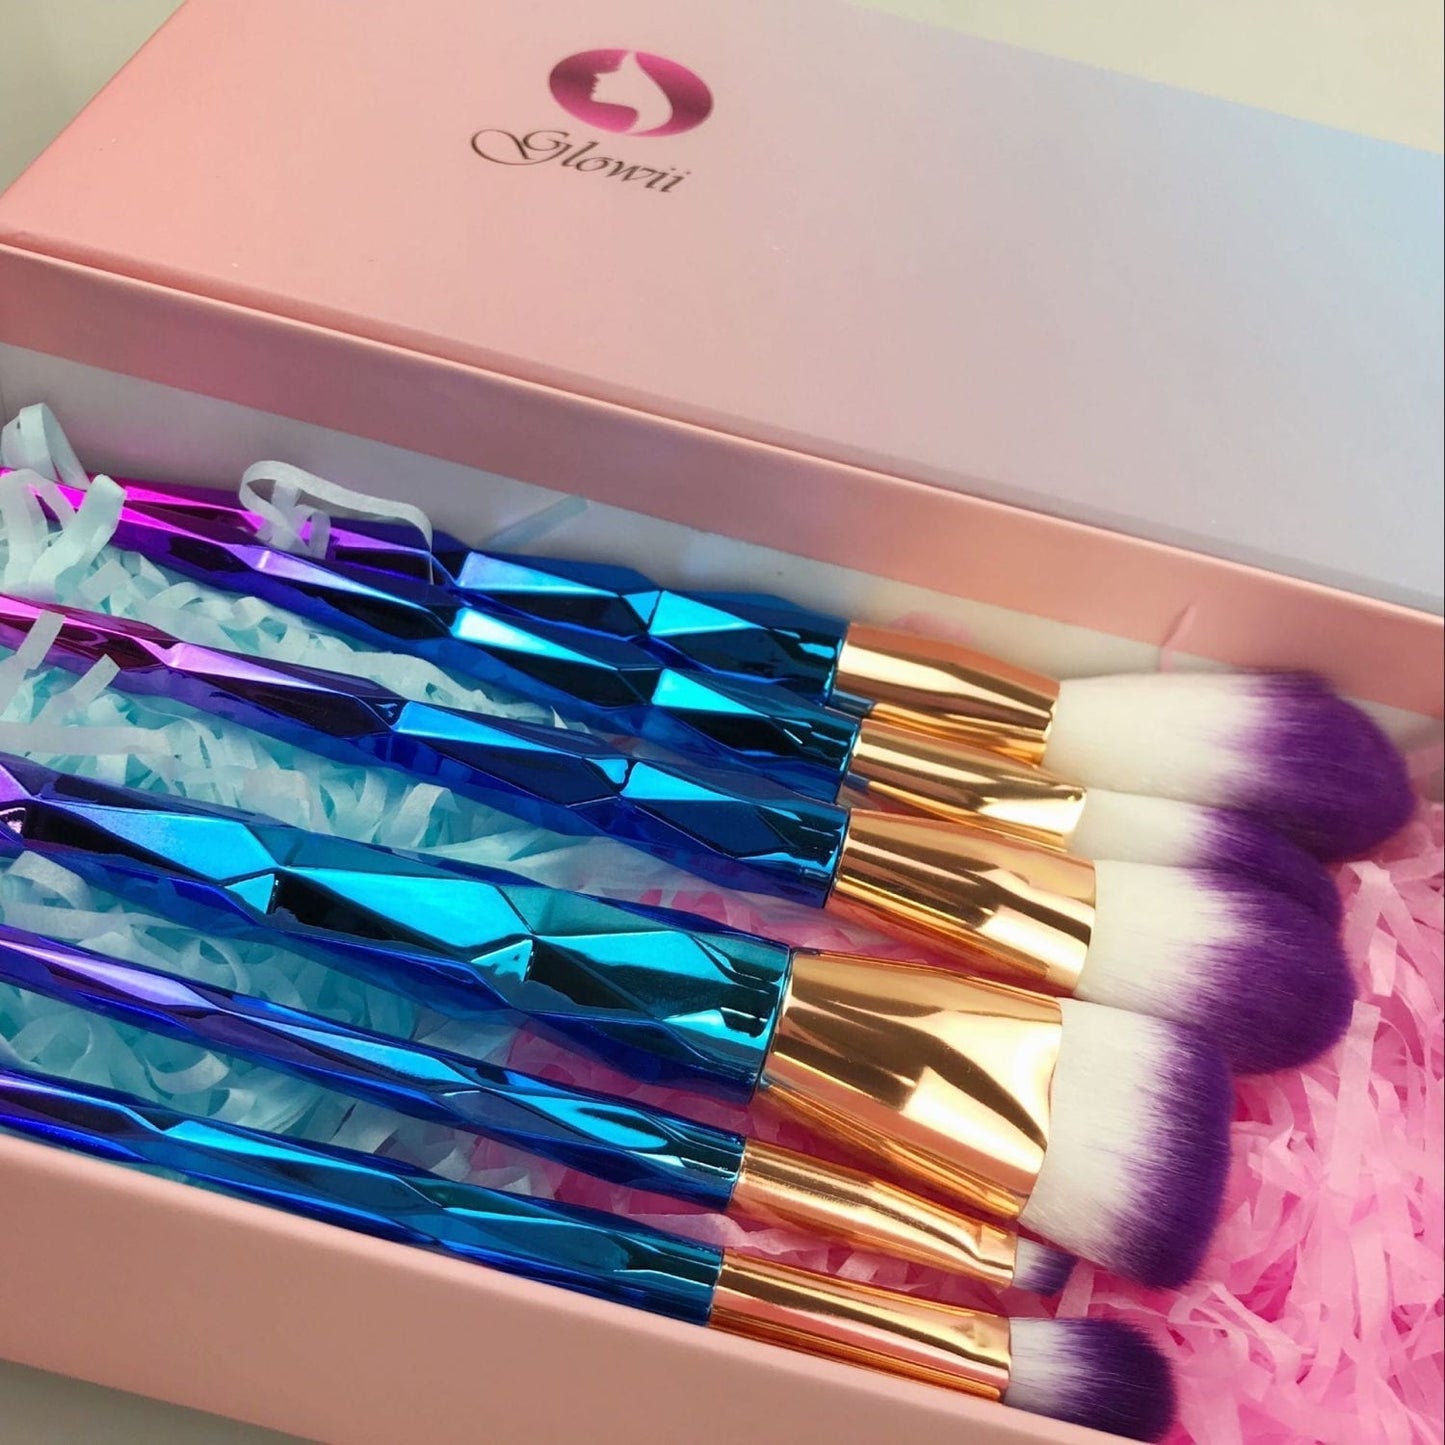 Glowii 7pcs Unicorn Diamond Purple Hair Makeup Brush Set & Gift Box